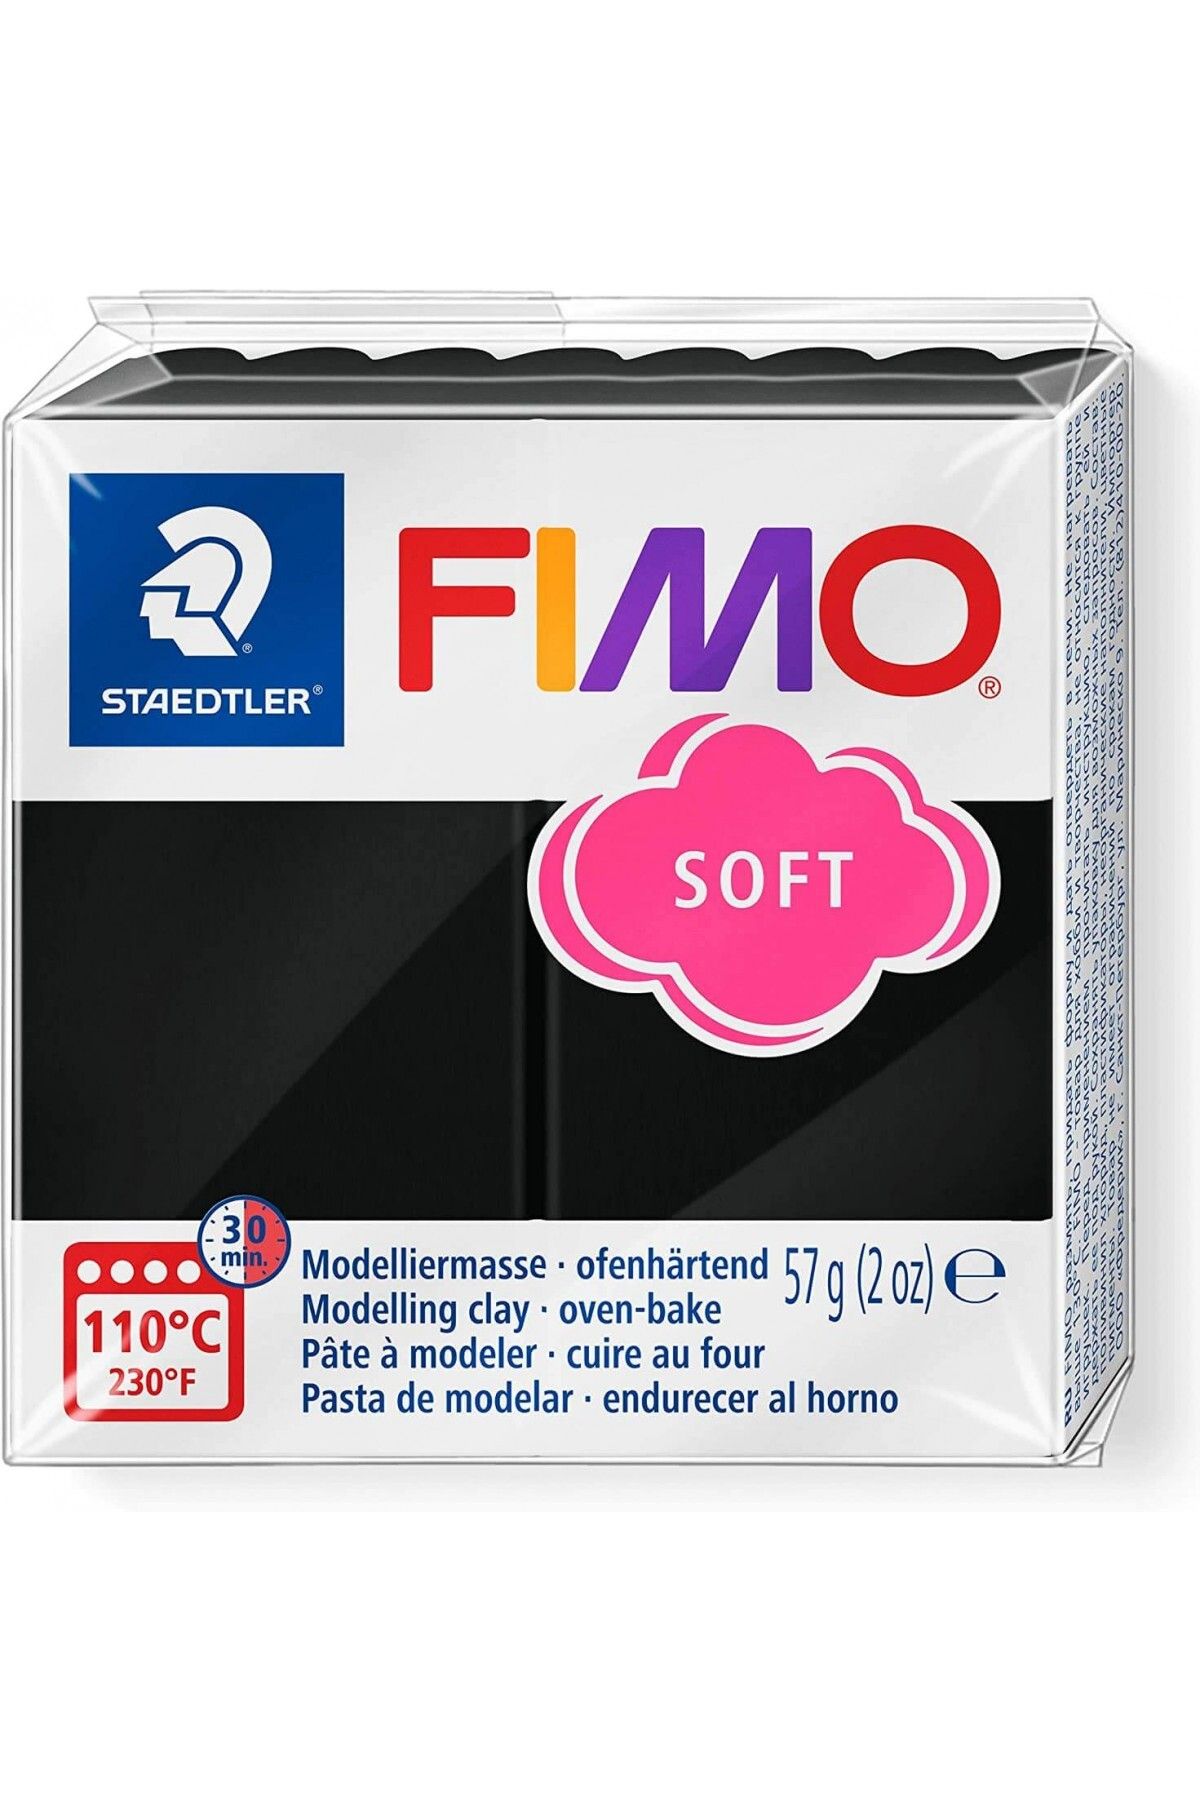 Staedtler Fimo Polimer Kil 57gr Soft Modelleme Kili Siyah / 8020-9 07